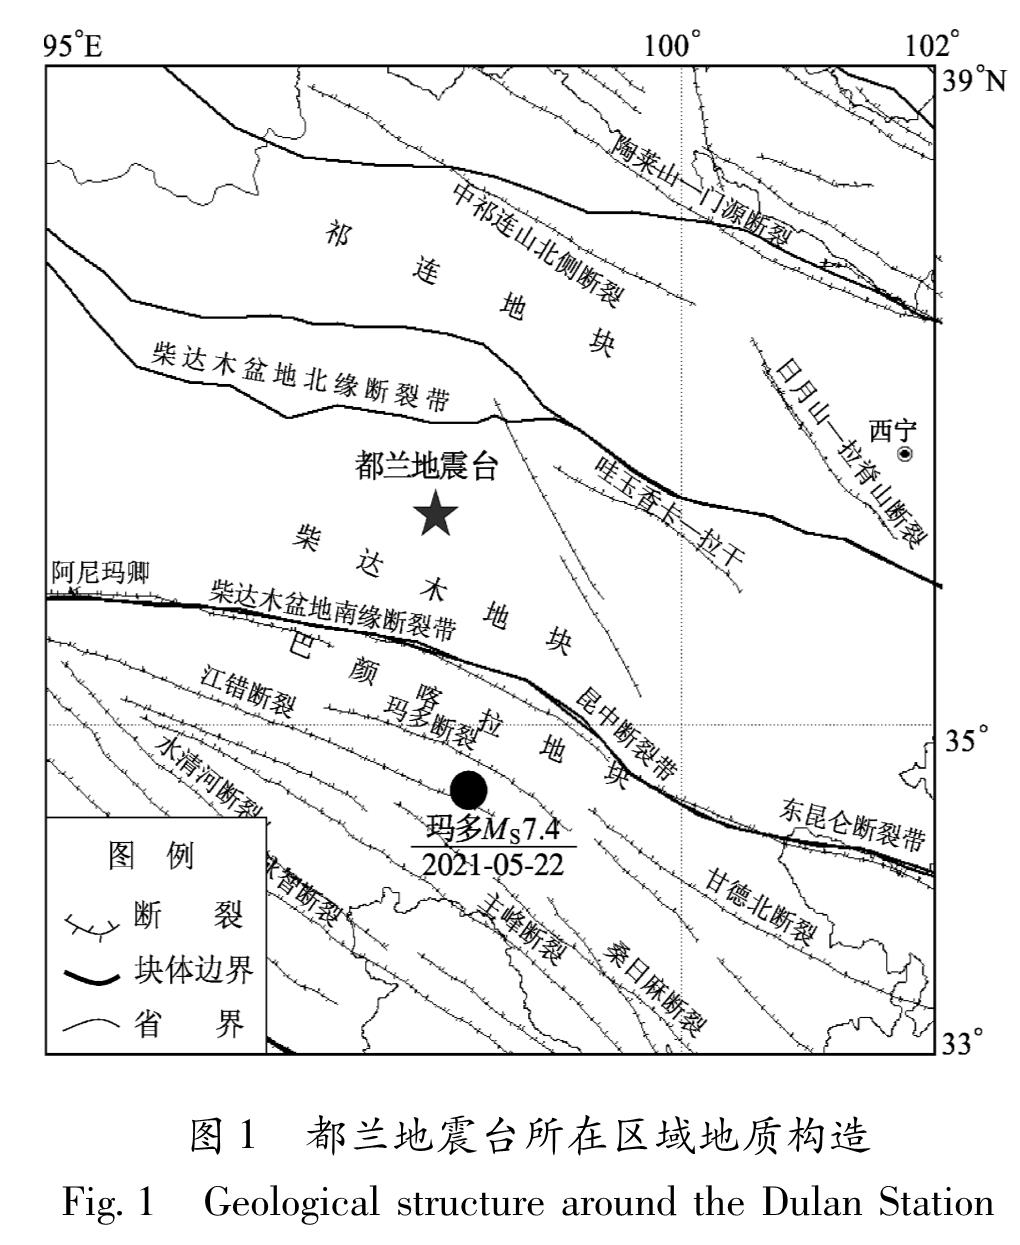 图1 都兰地震台所在区域地质构造<br/>Fig.1 Geological structure around the Dulan Station